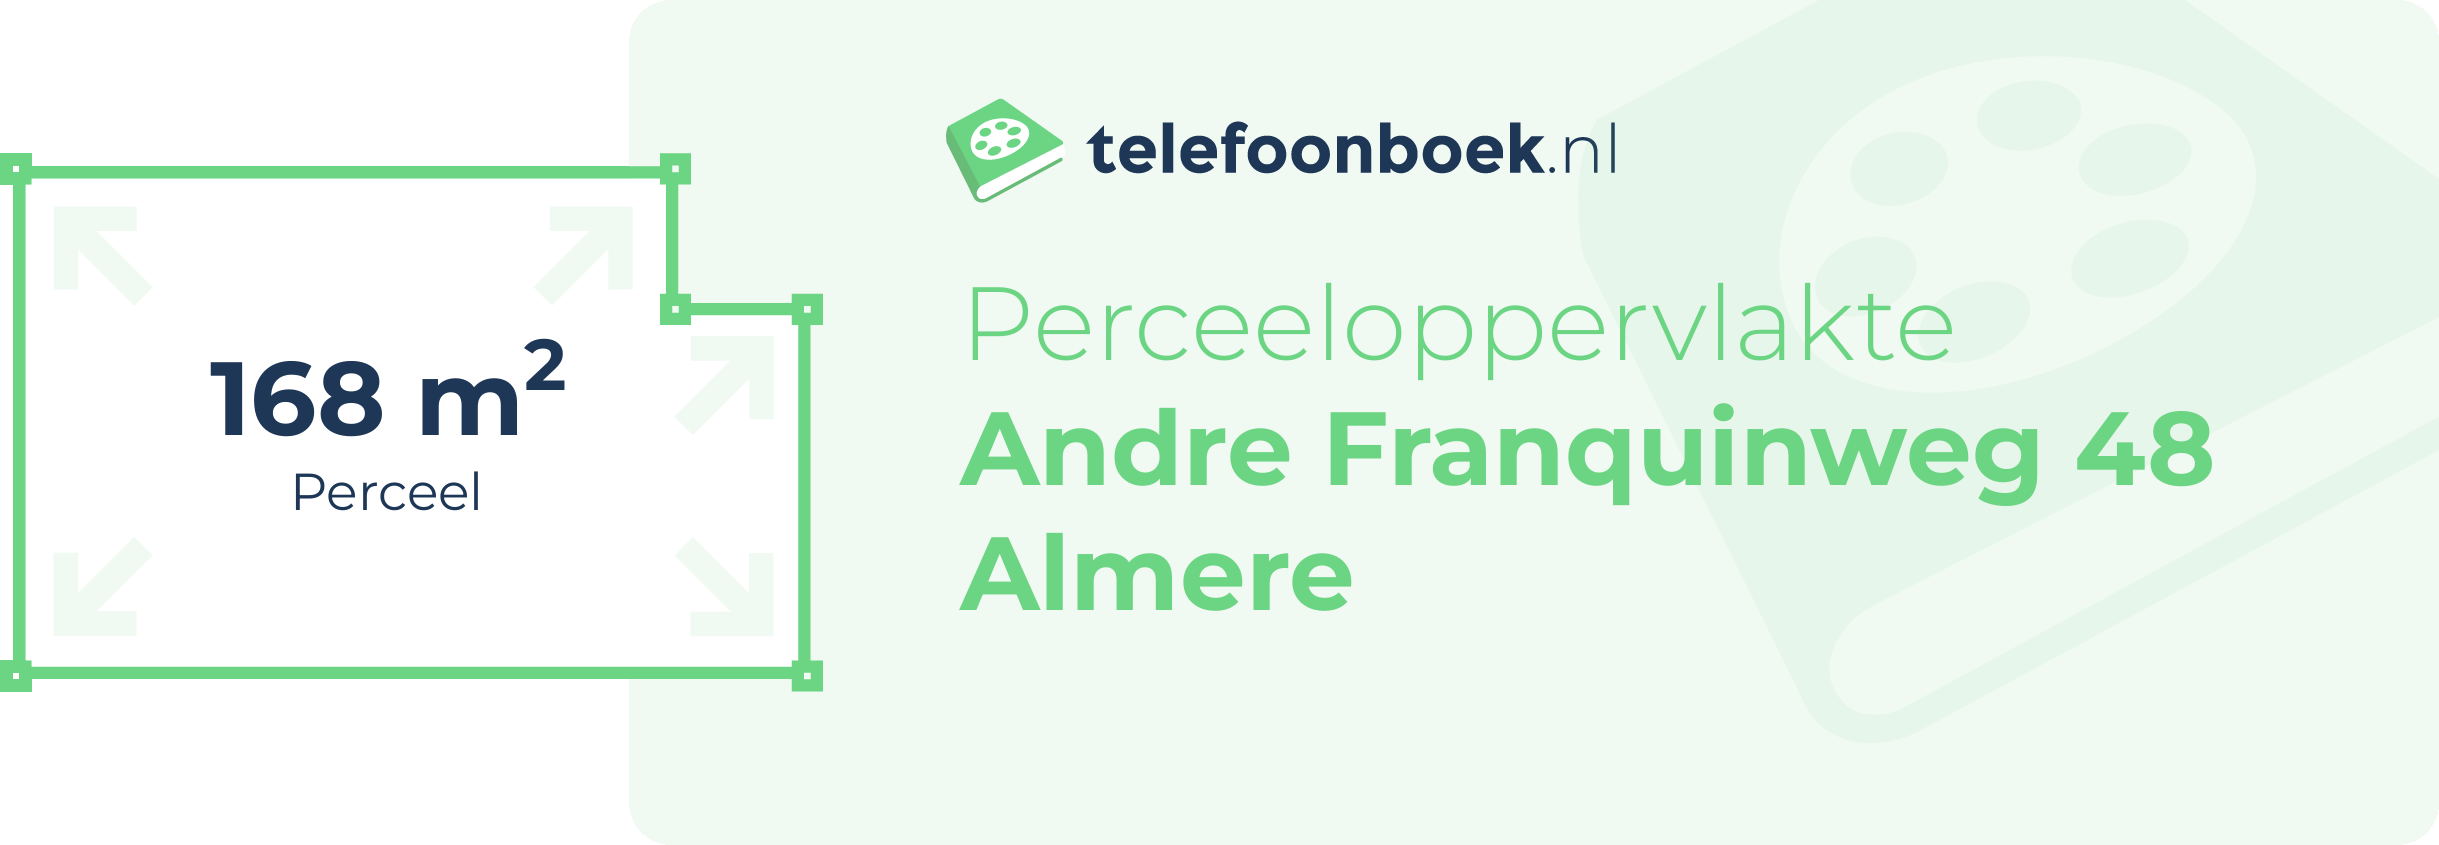 Perceeloppervlakte Andre Franquinweg 48 Almere